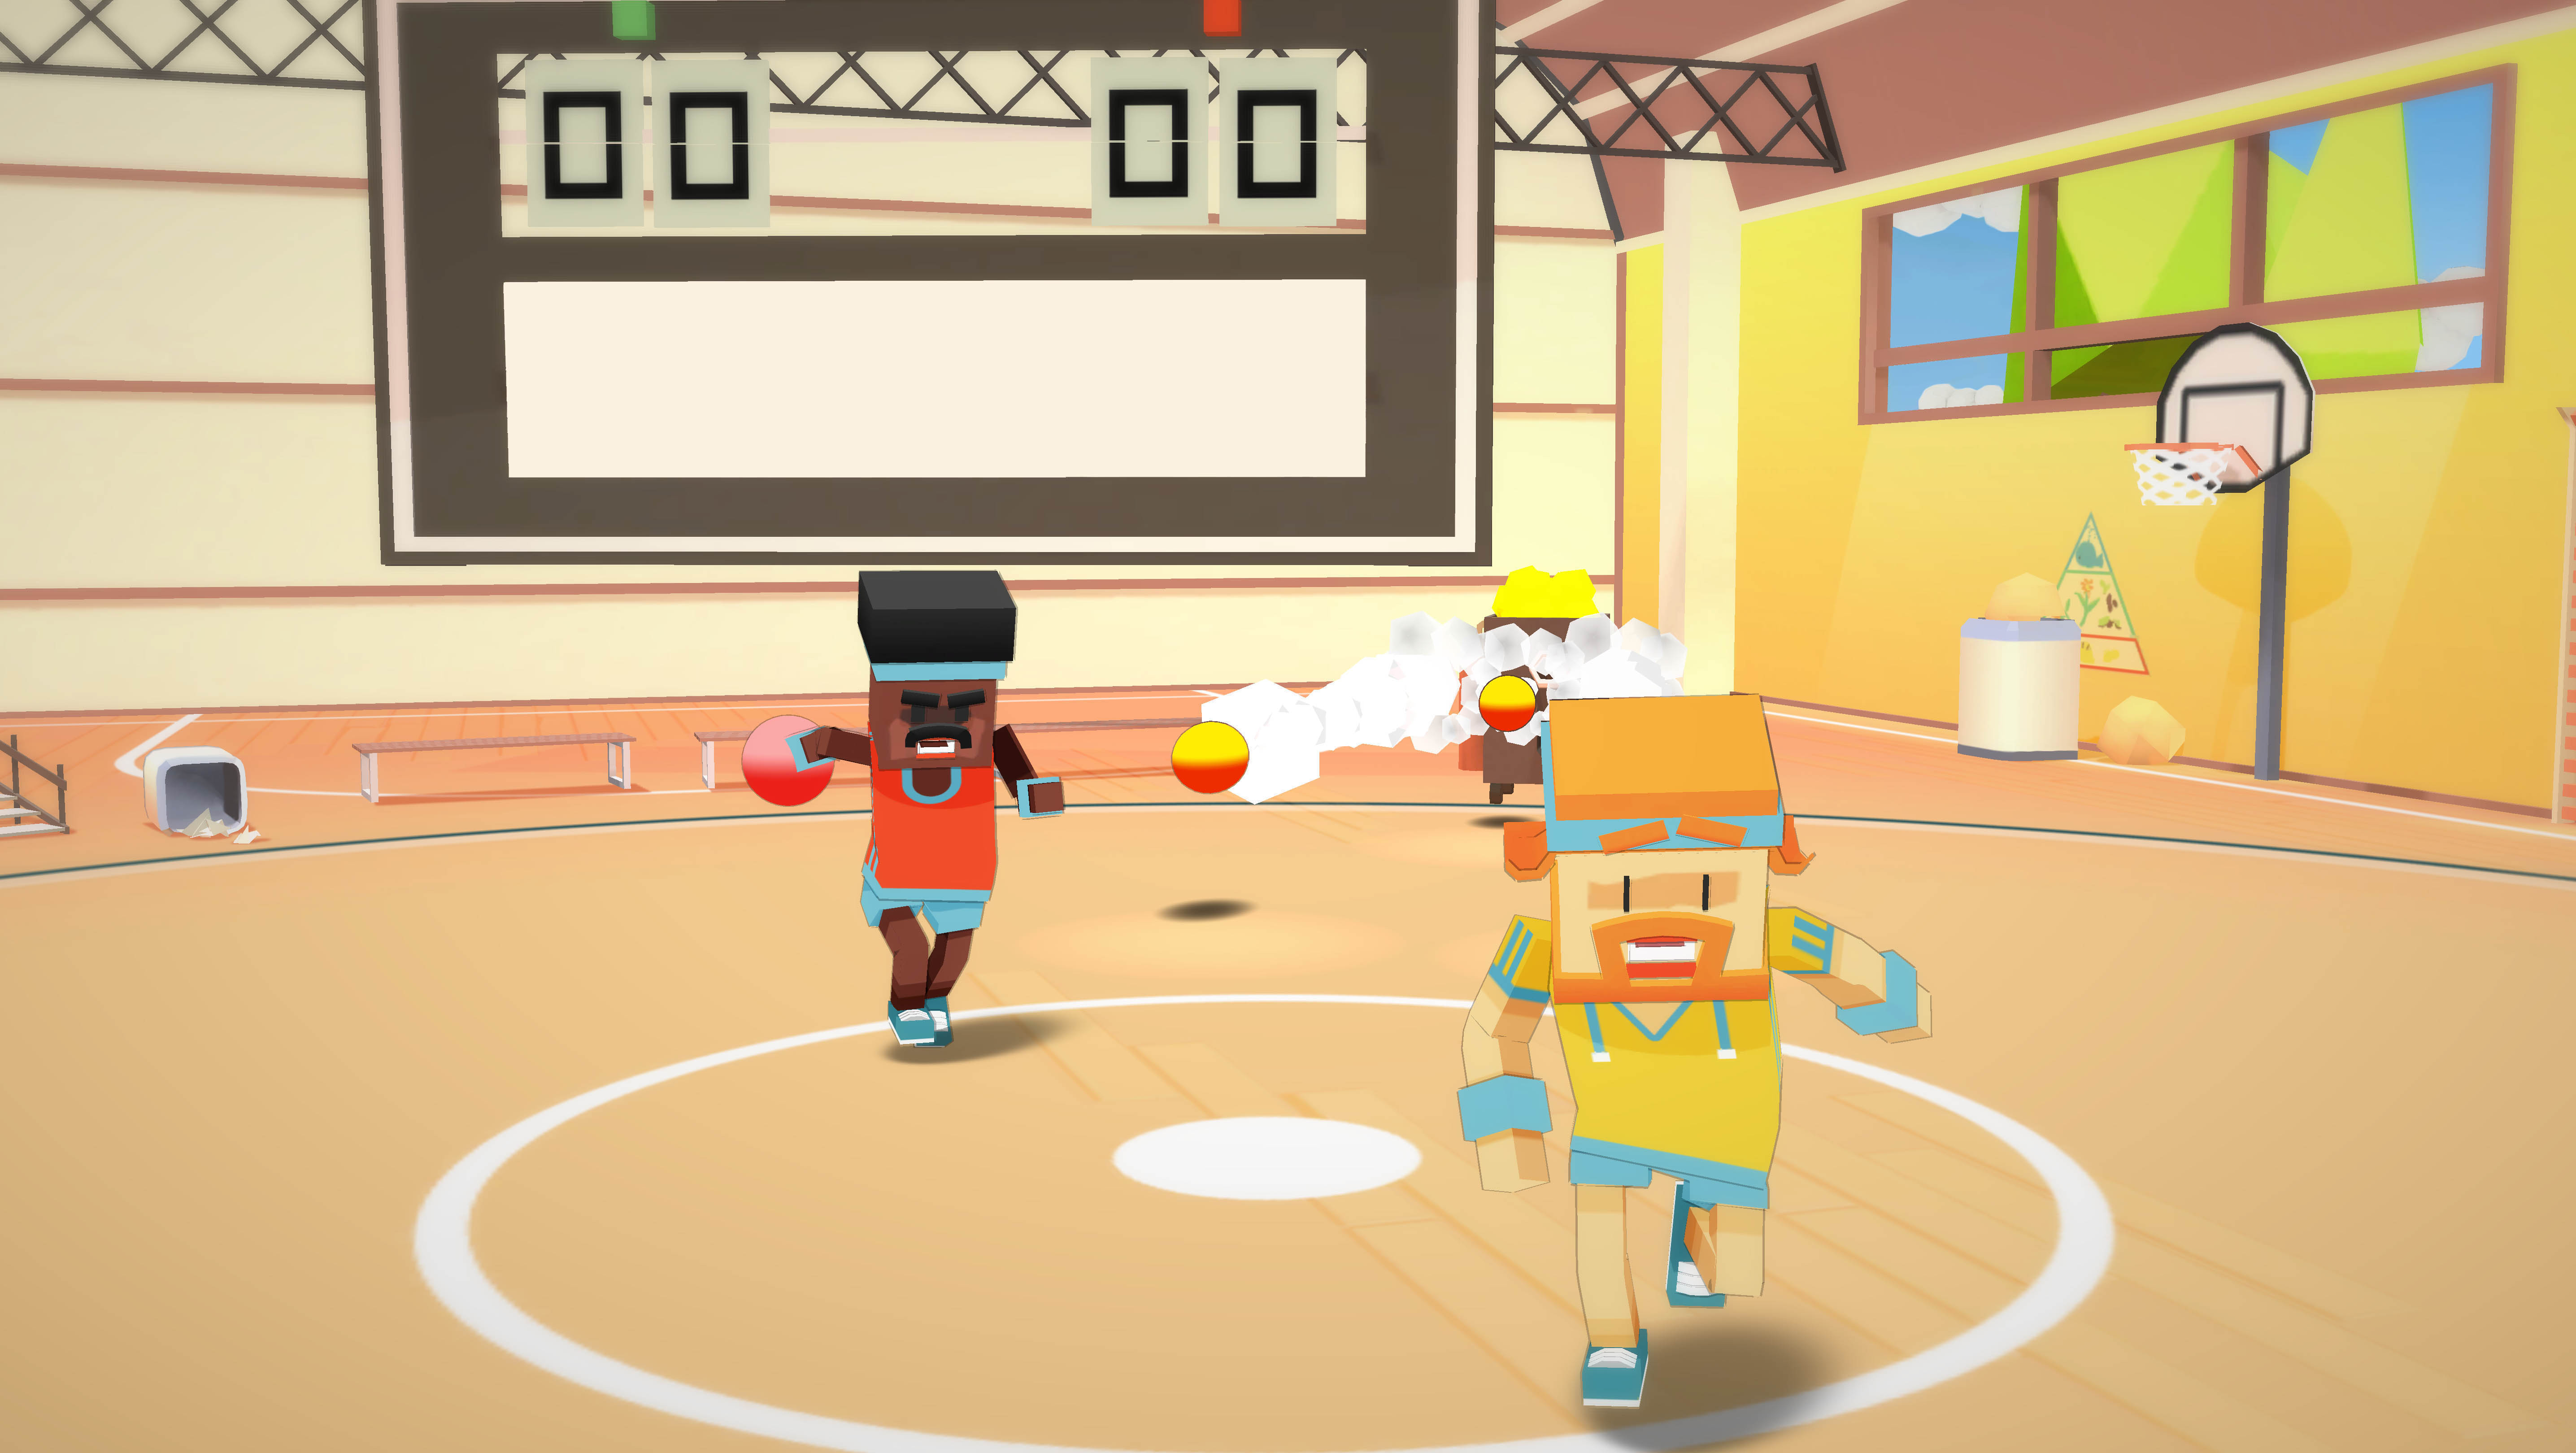 Stikbold! A Dodgeball Adventure screenshot